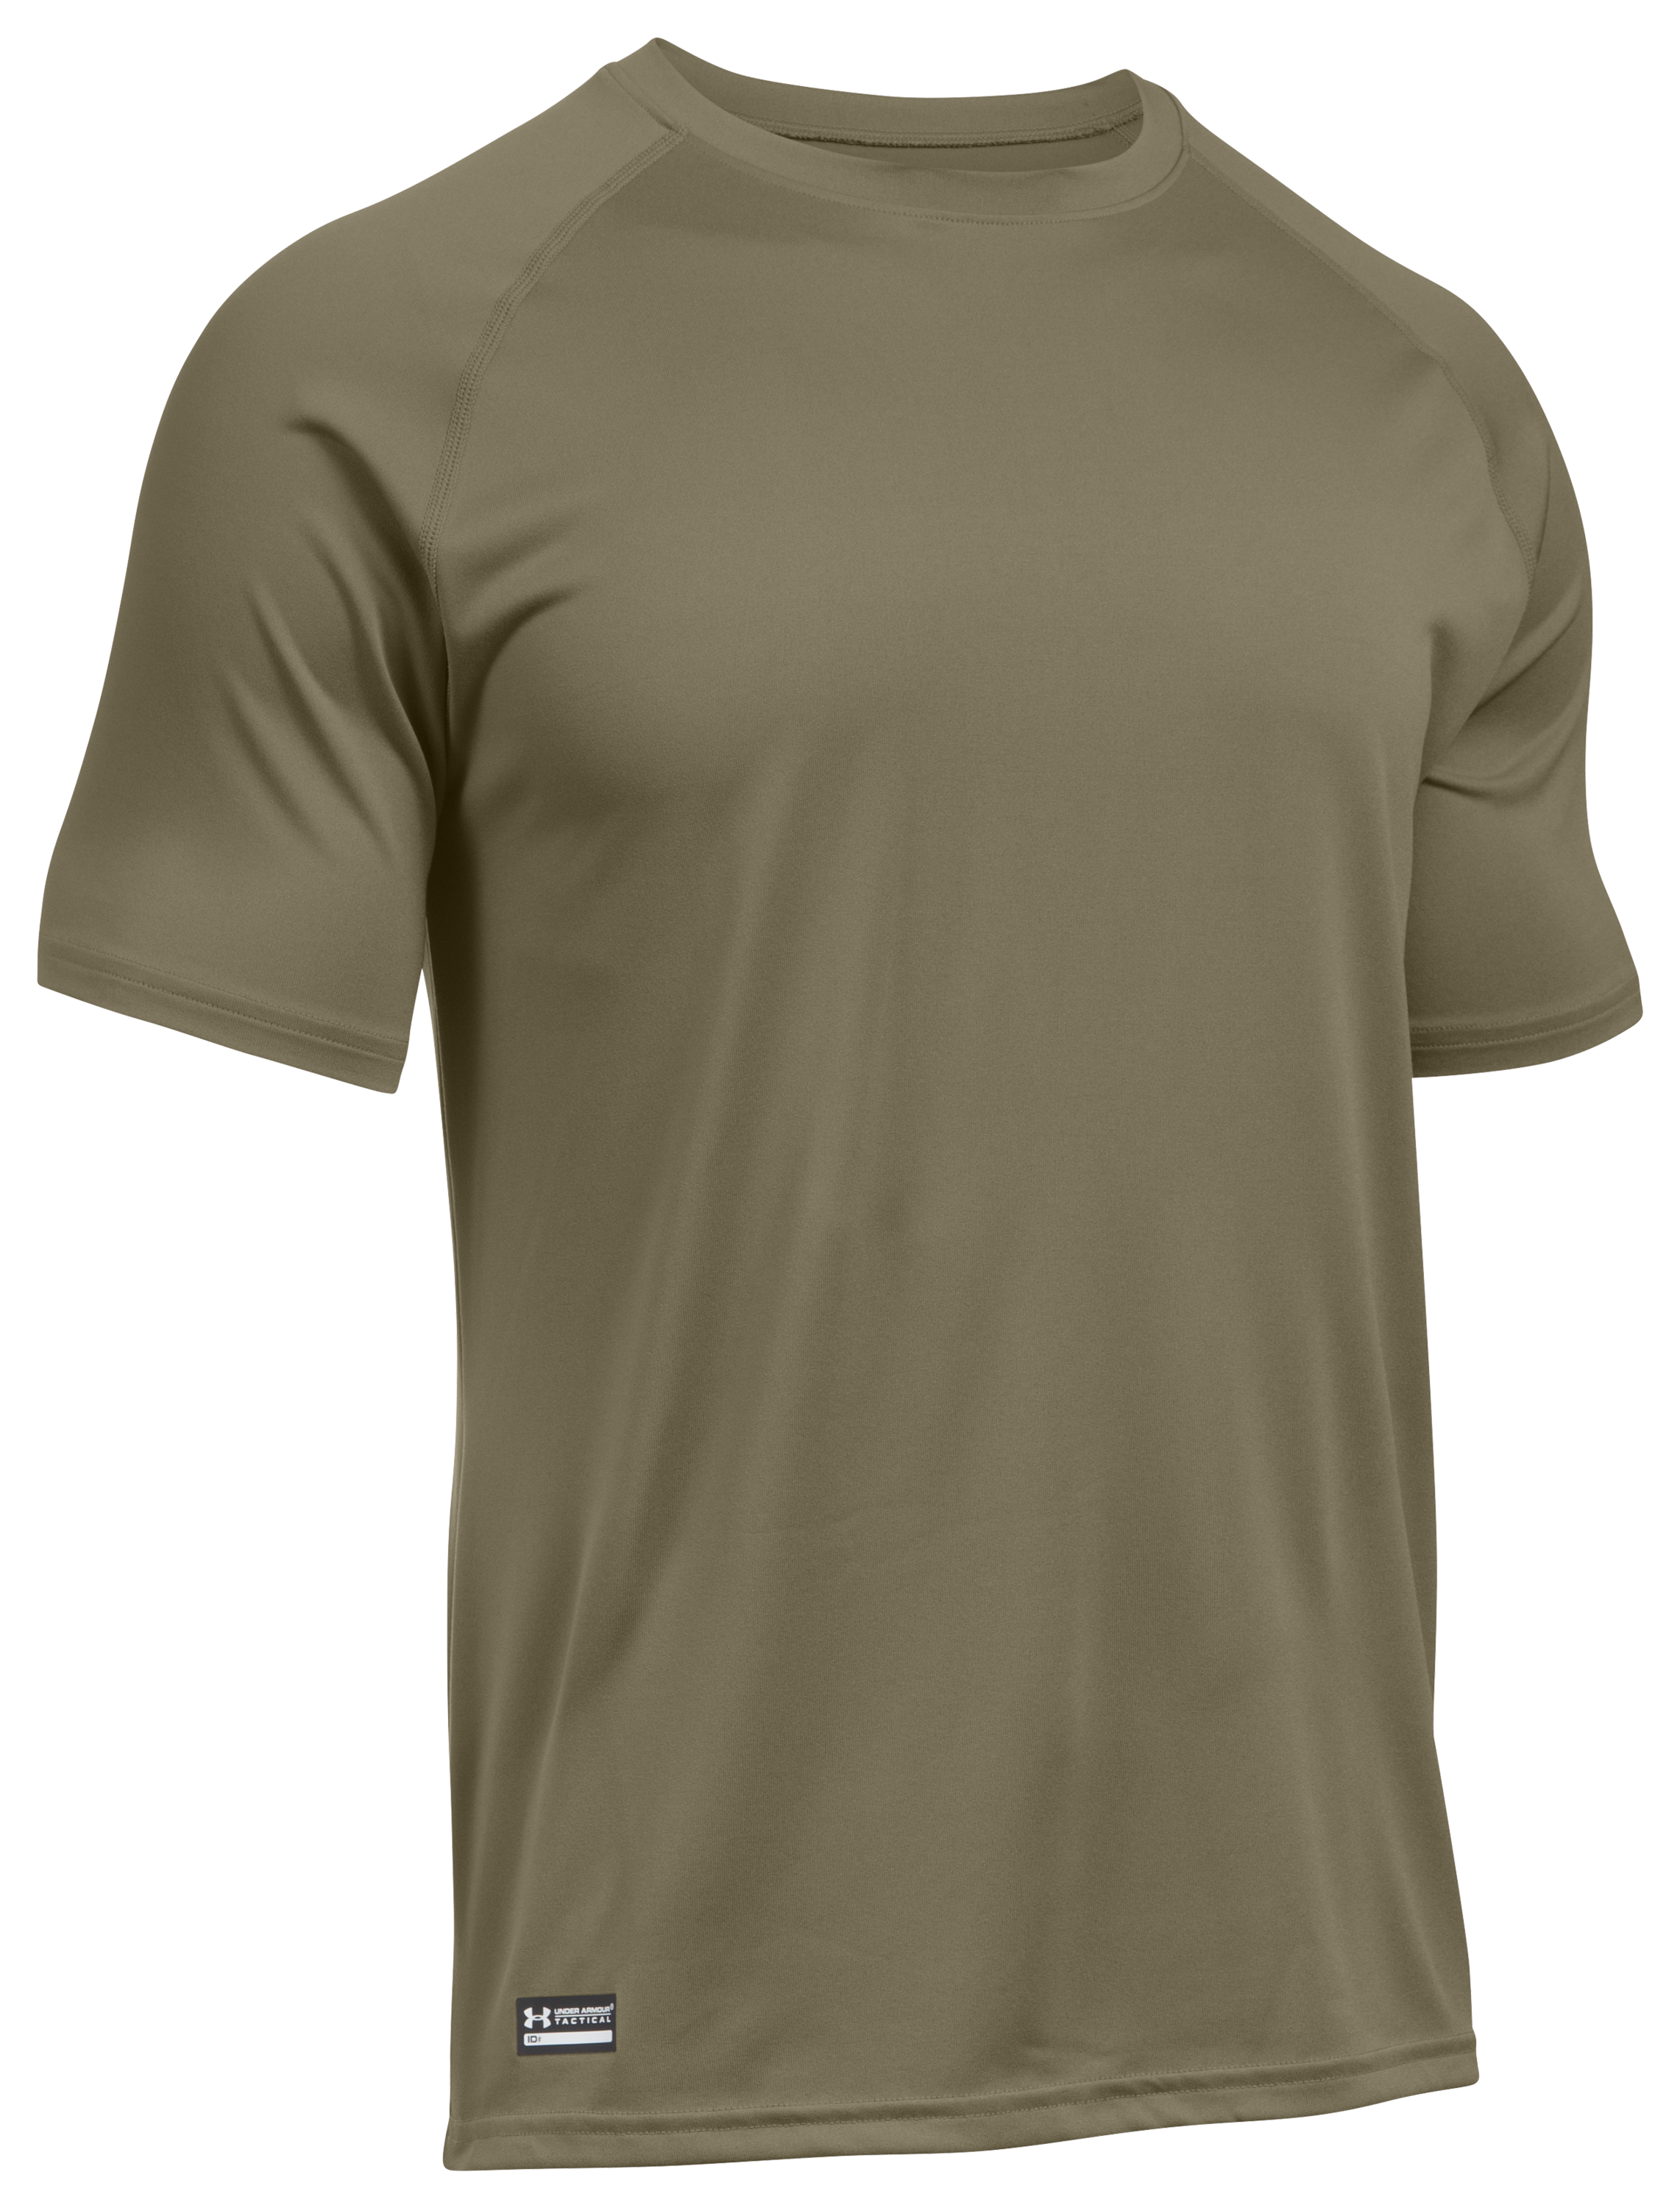 Under Armour Tactical Tech Short-Sleeve T-Shirt for Men